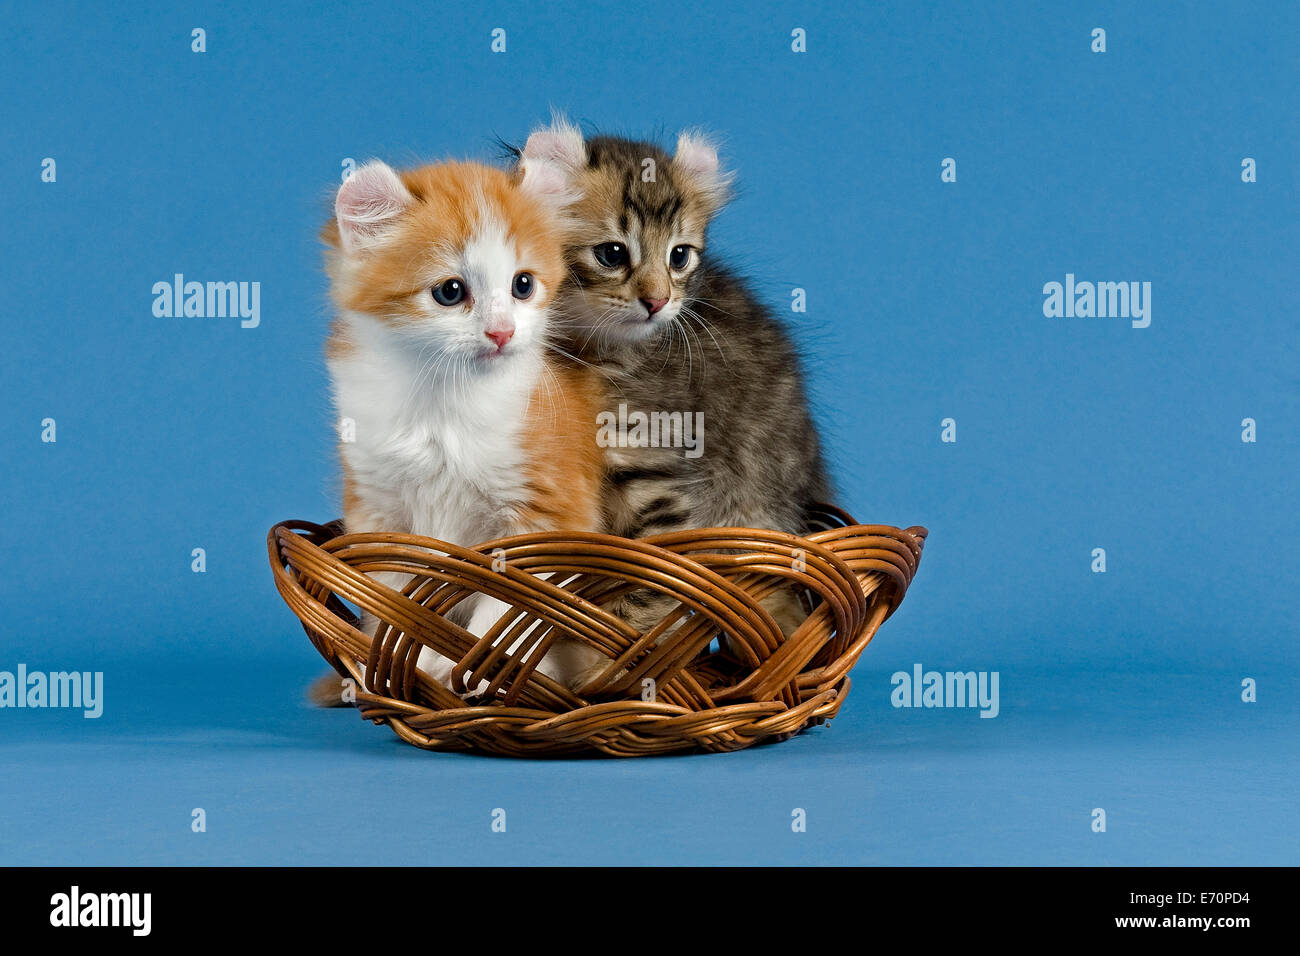 Les chats Pedigree, American Curl, race de chat, deux chatons dans un panier Banque D'Images